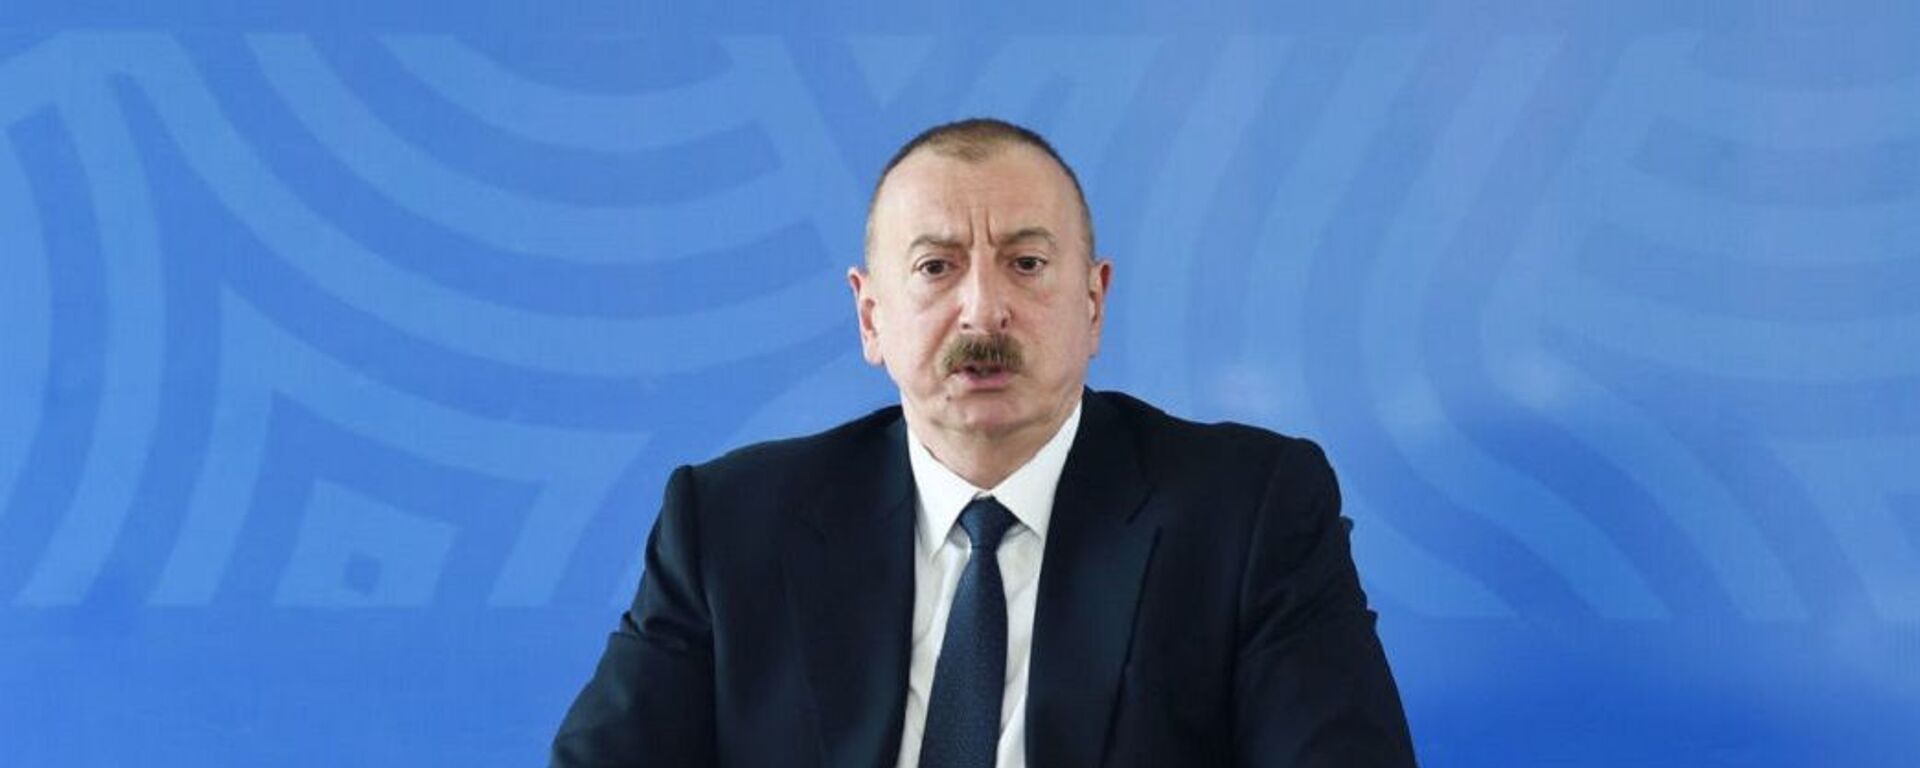 İlham Aliyev - Sputnik Türkiye, 1920, 28.11.2021